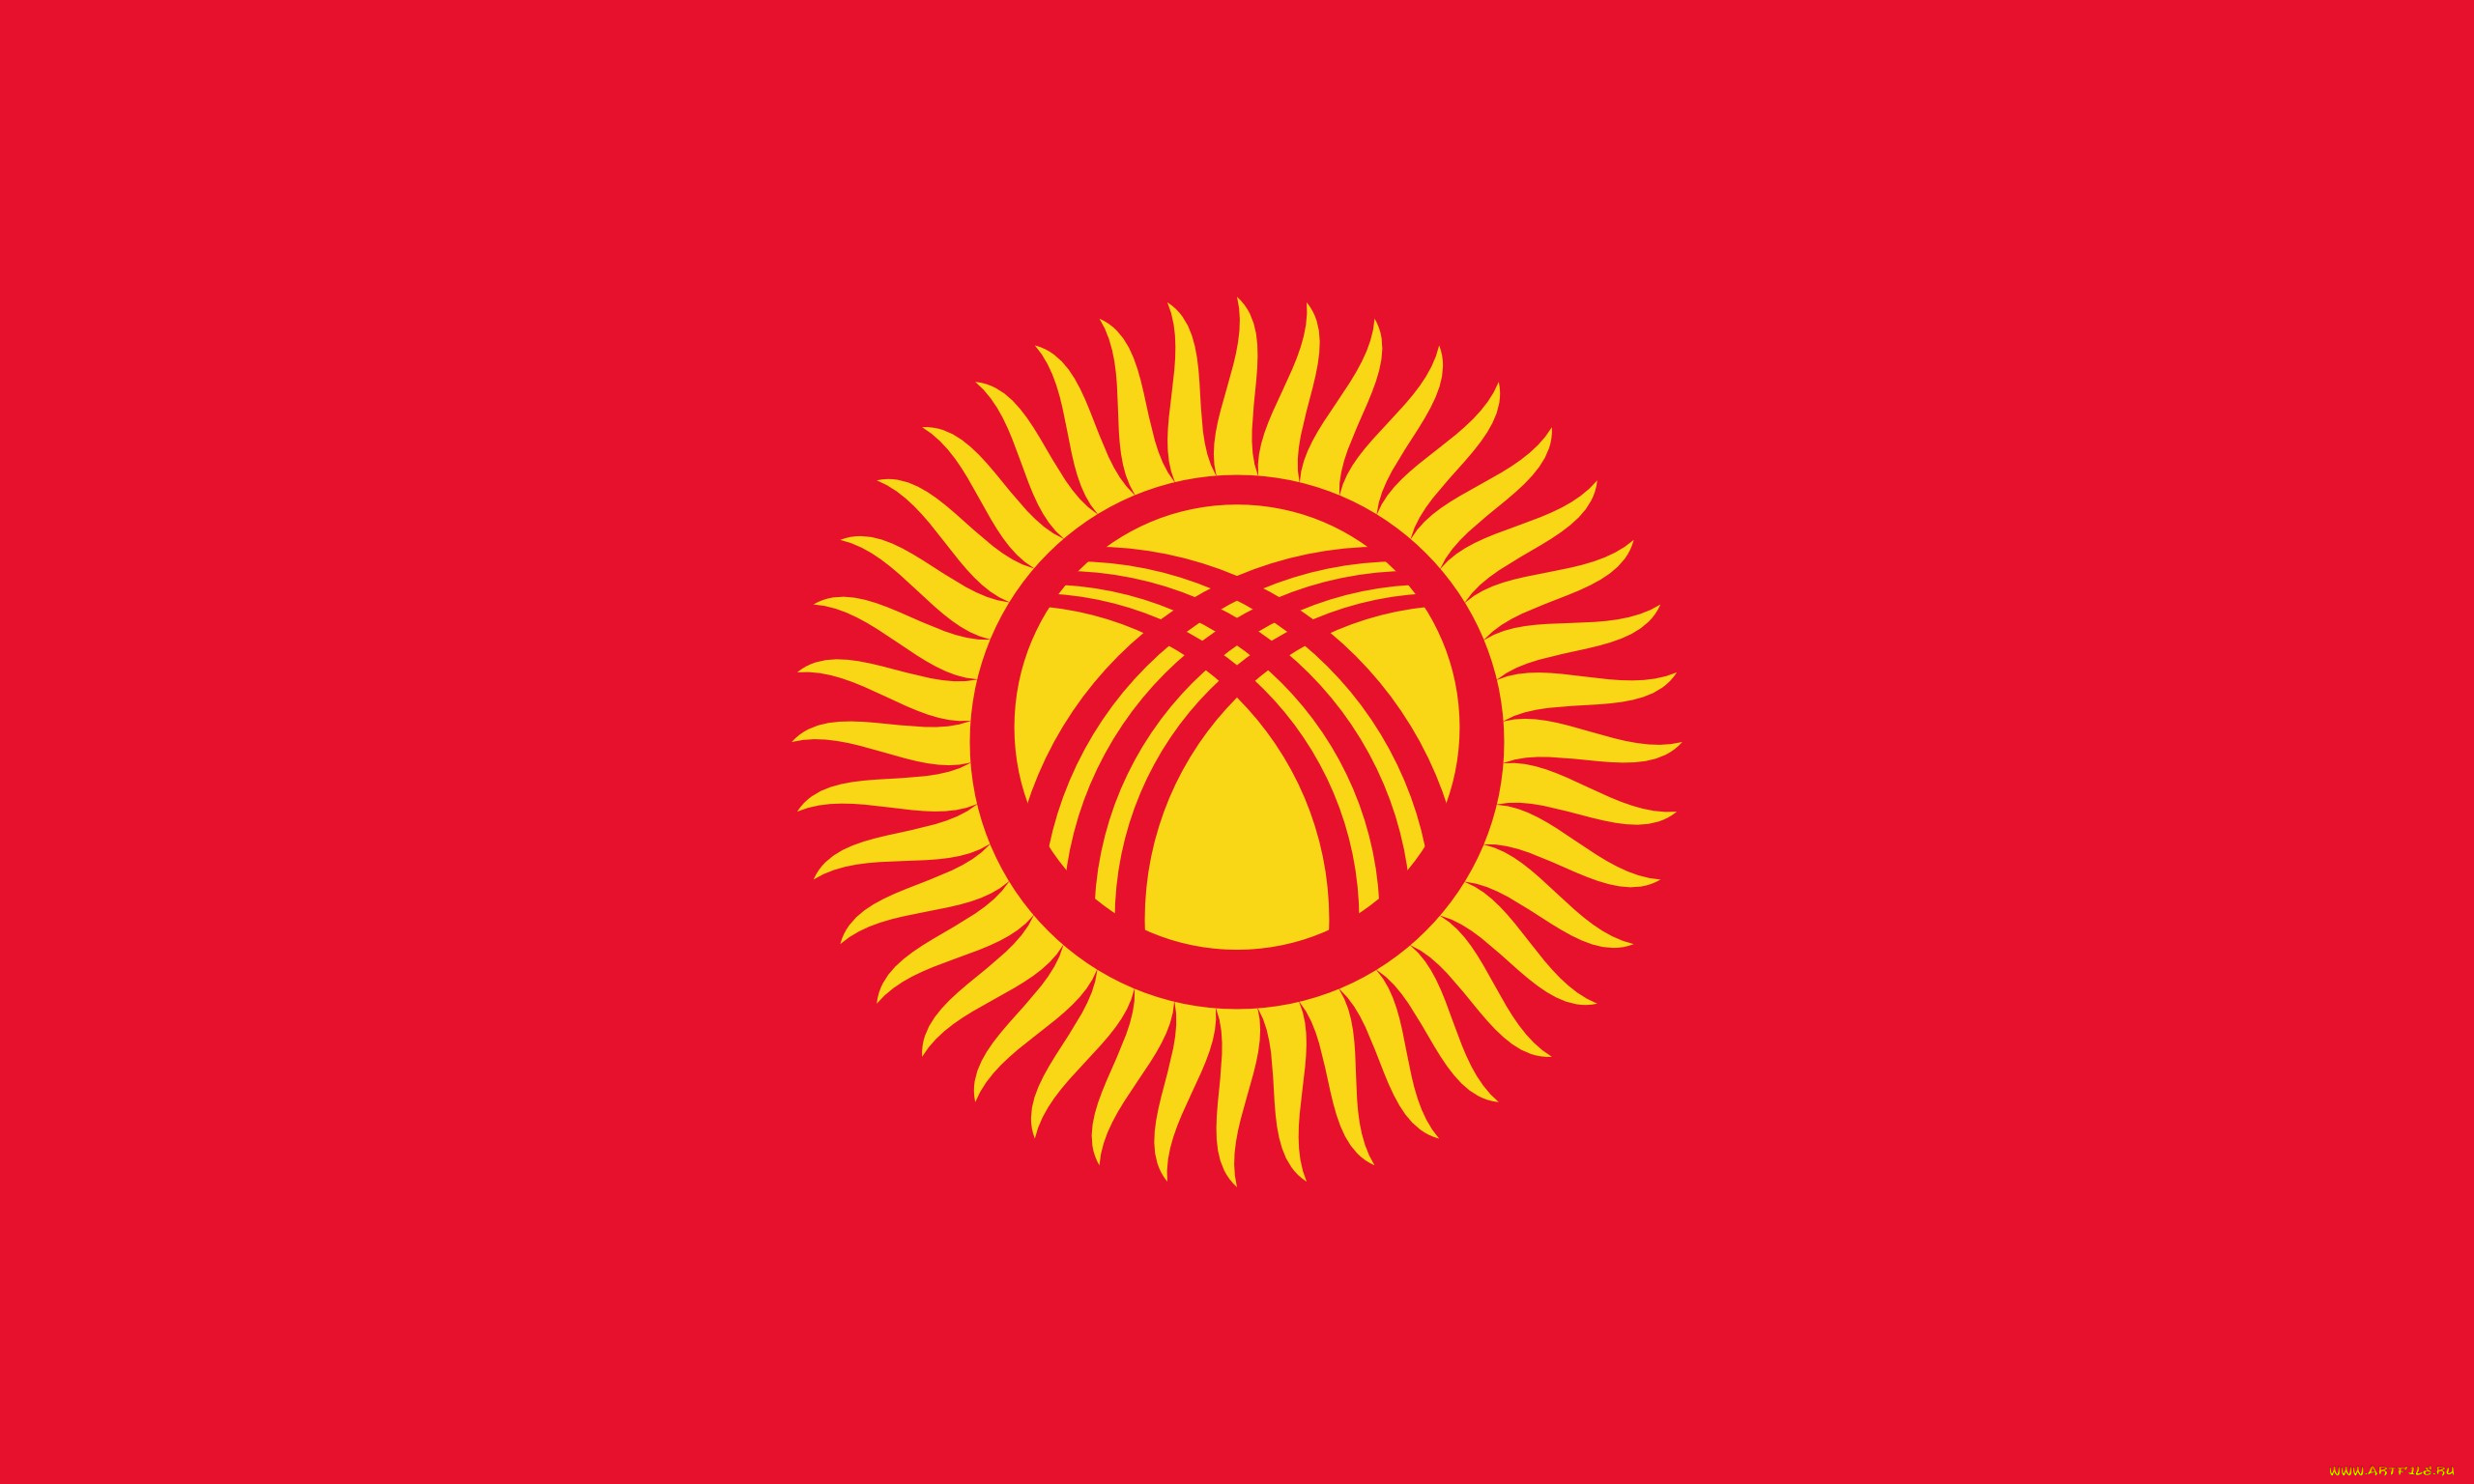 киргизия, разное, флаги, гербы, солнце, красный